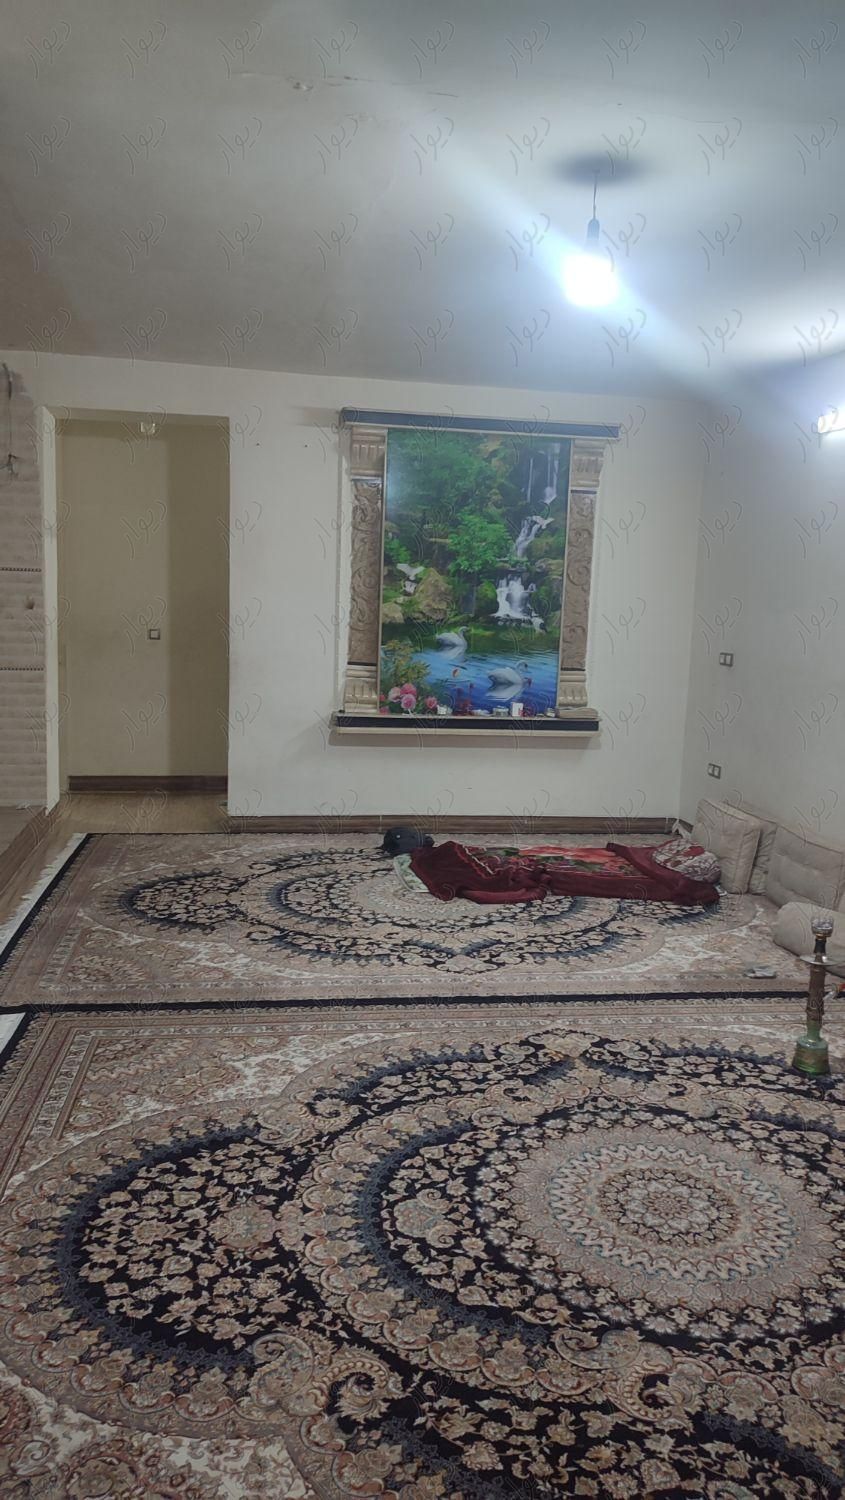 ویلایی یه طبقه ۳ خوابه مستردار شهرک رضوان|فروش خانه و ویلا|شیراز, رضوان|دیوار